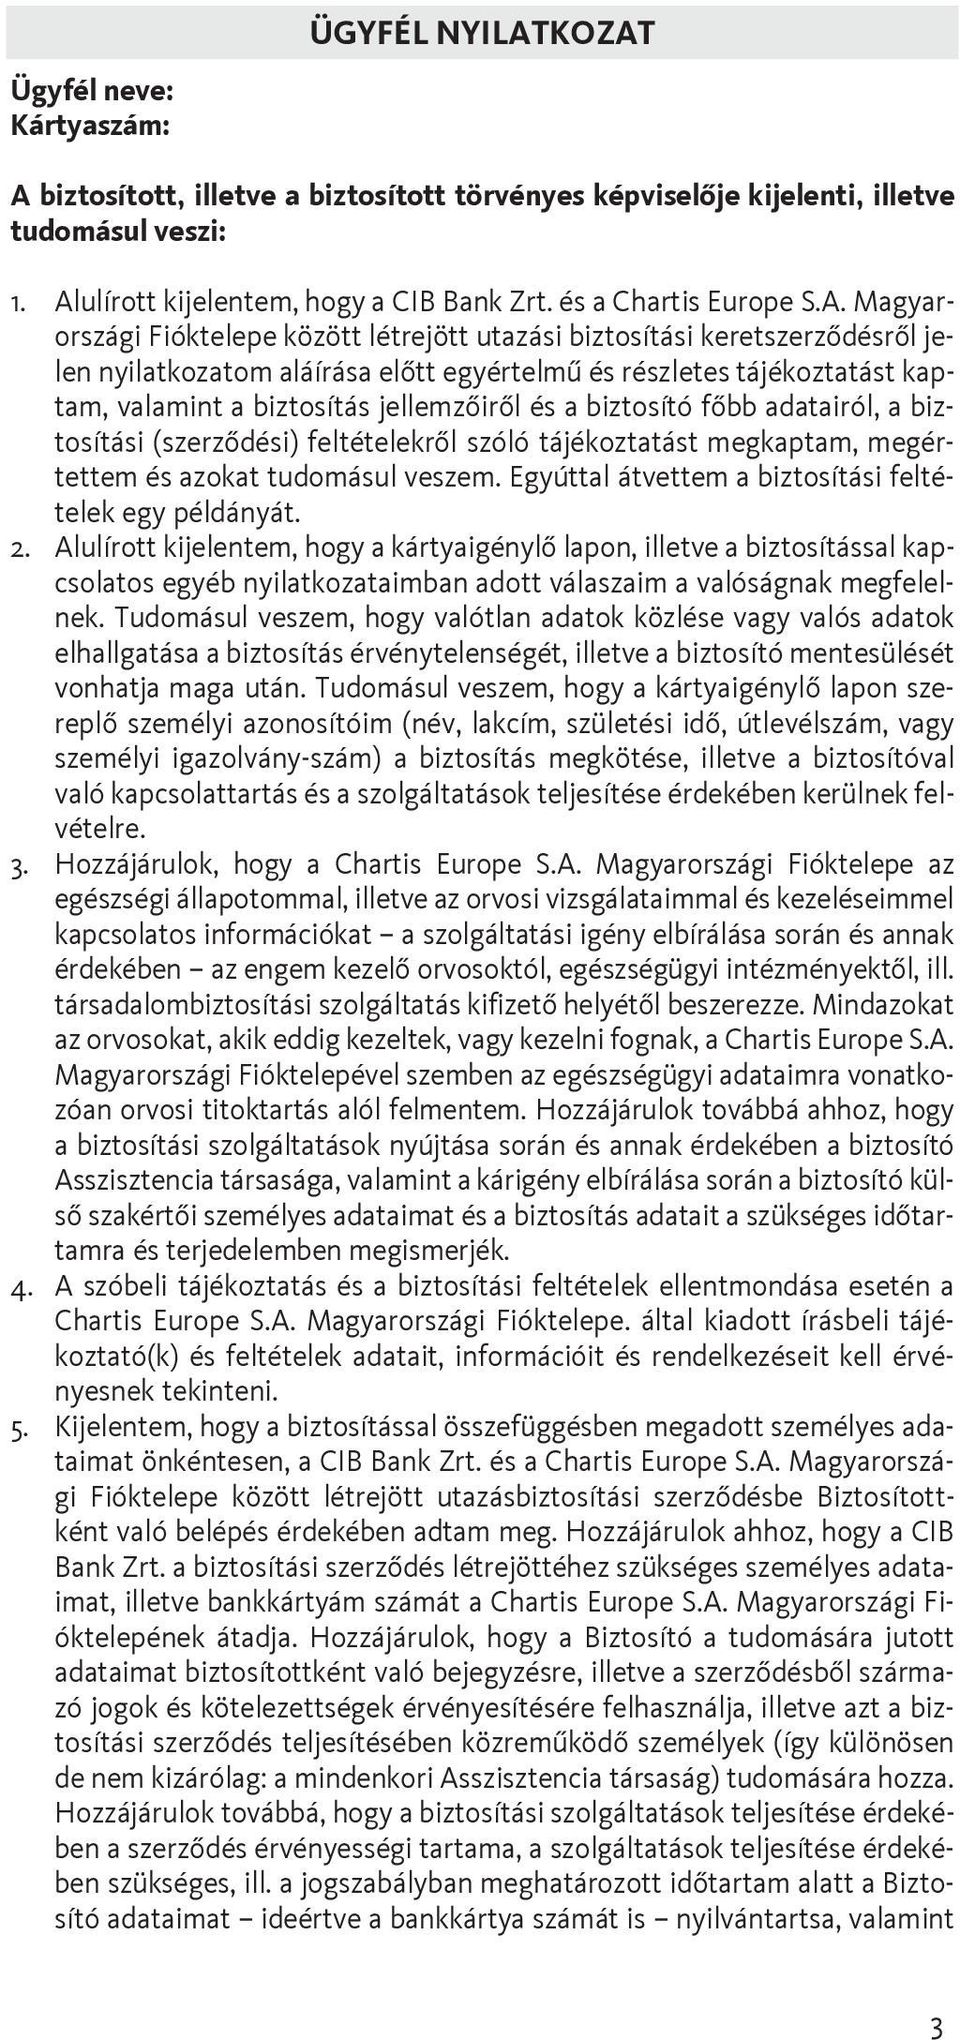 Magyarországi Fióktelepe között létrejött utazási biztosítási keretszerzõdésrõl jelen nyilatkozatom aláírása elõtt egyértelmû és részletes tájékoztatást kaptam, valamint a biztosítás jellemzõirõl és